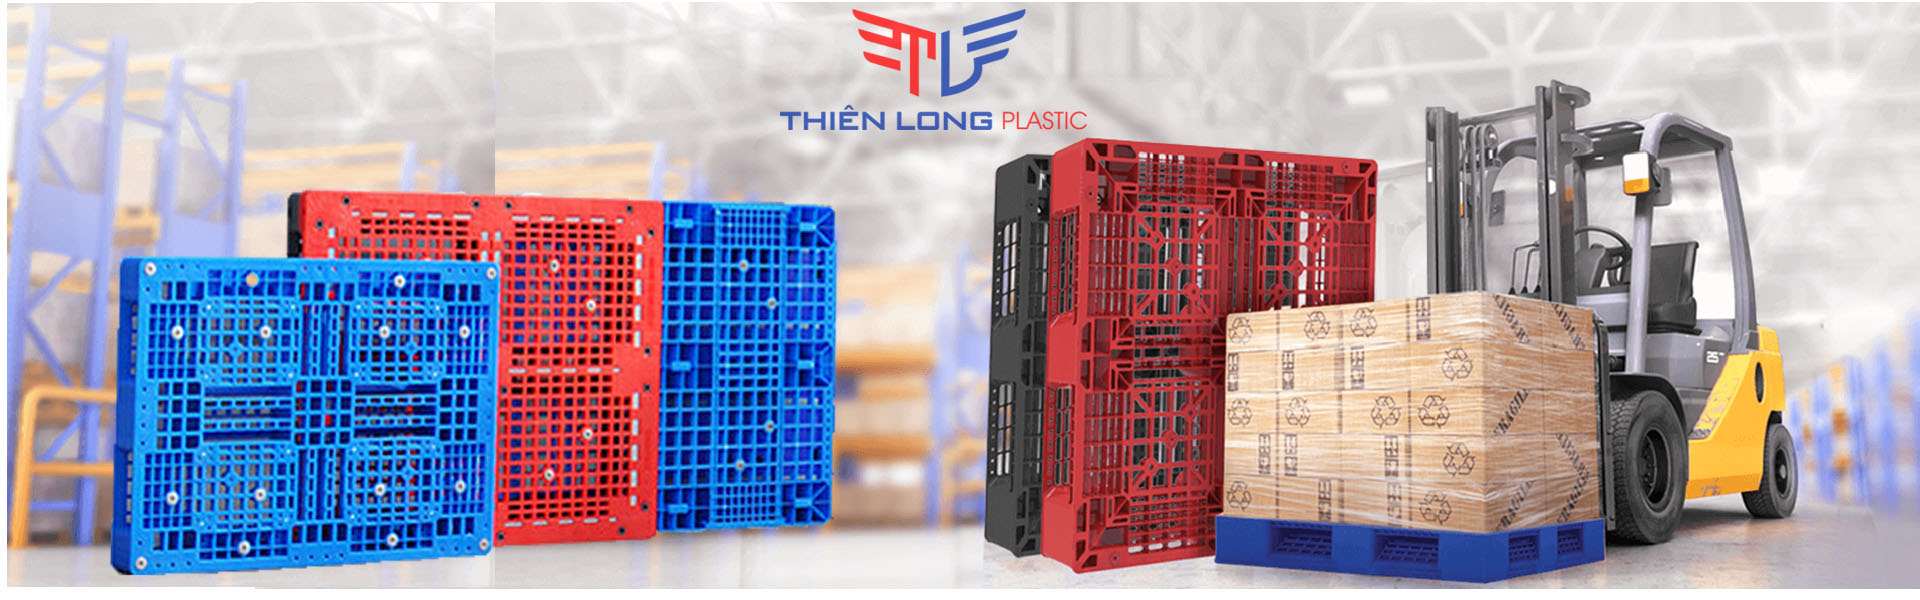 Nhựa Thiên Long- Nhà sản xuất sóng nhựa công nghiệp, Pallet nhựa, Nhựa danpla hàng đầu